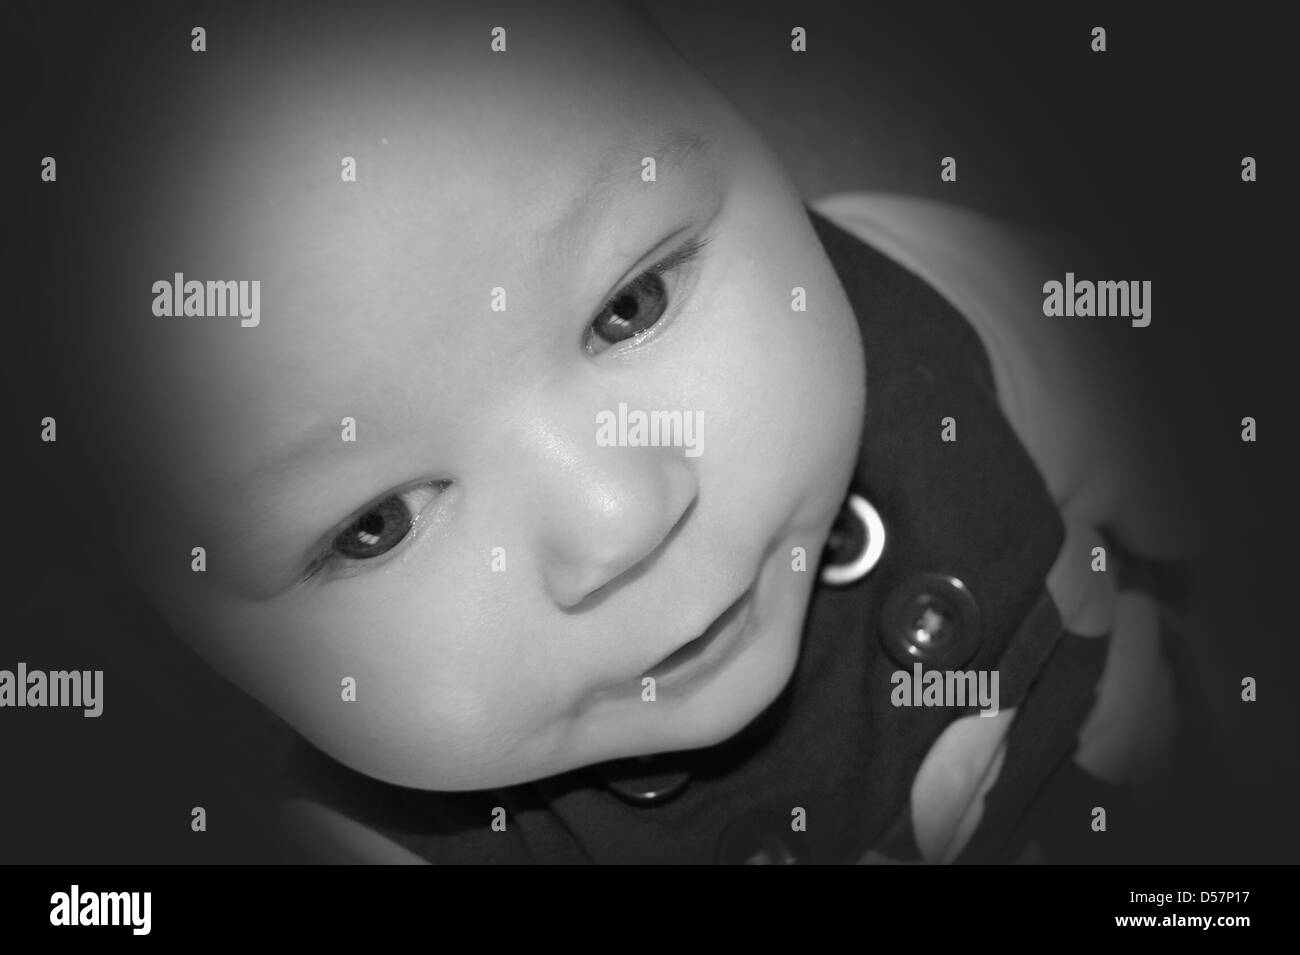 Baby face noir et blanc Banque D'Images